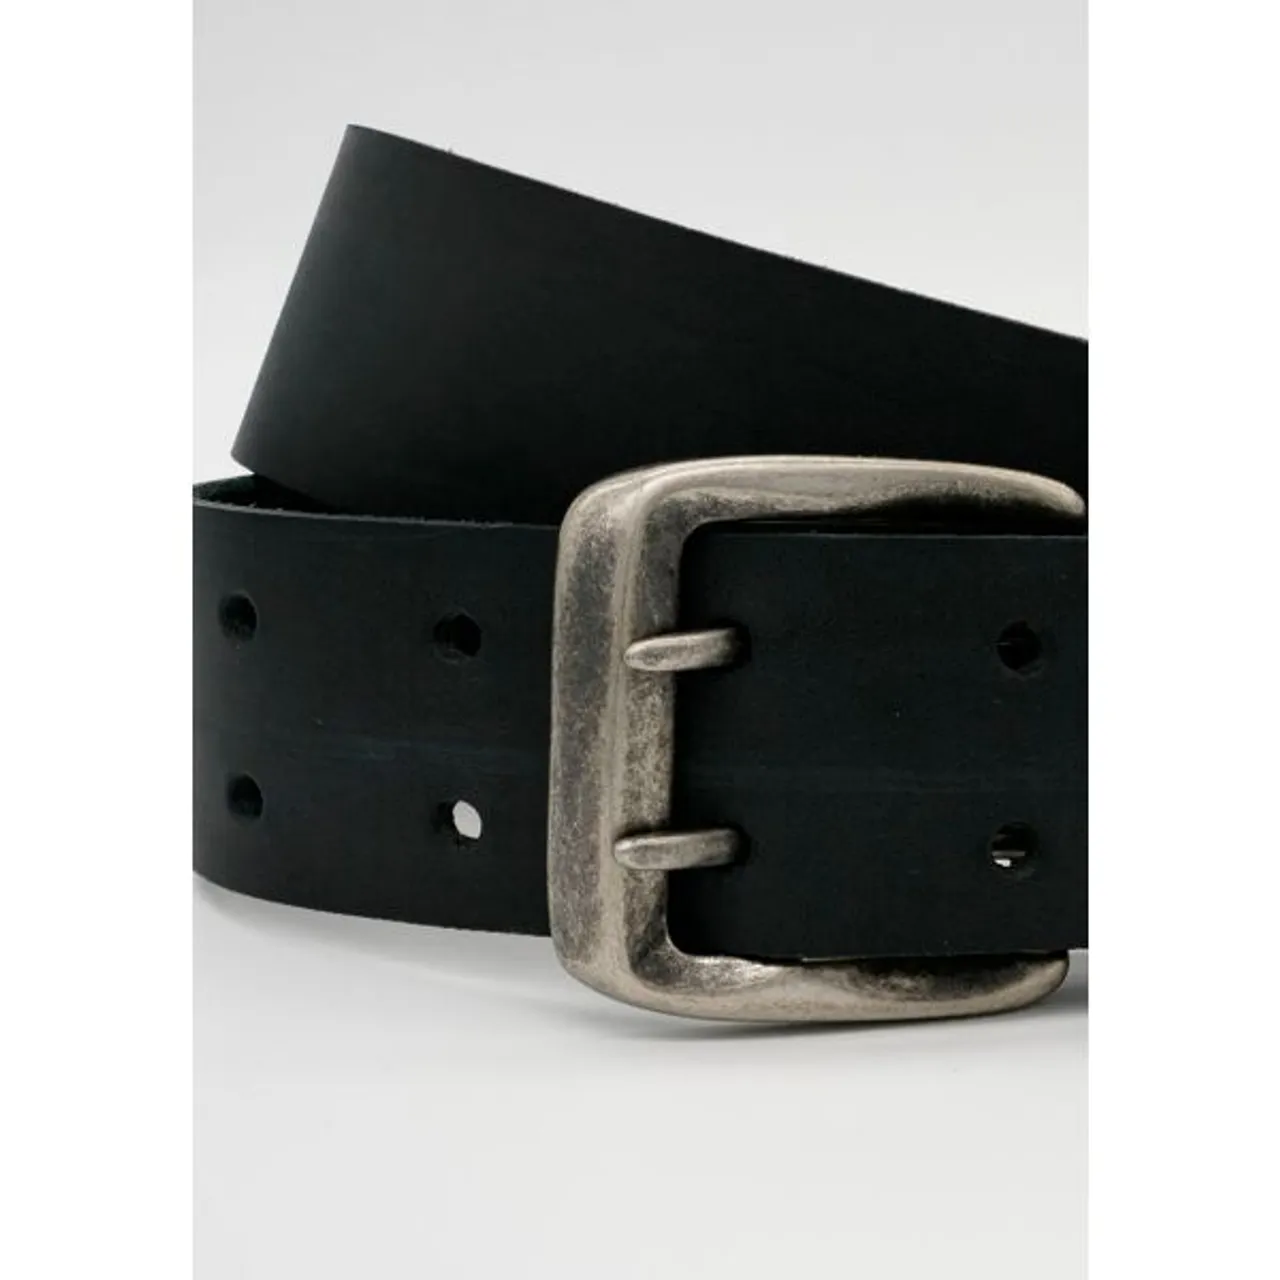 Ledergürtel ANNAMATONI Gr. 105, schwarz Damen Gürtel Ledergürtel Mit Doppeldorn-Schließe im Vintage-Look